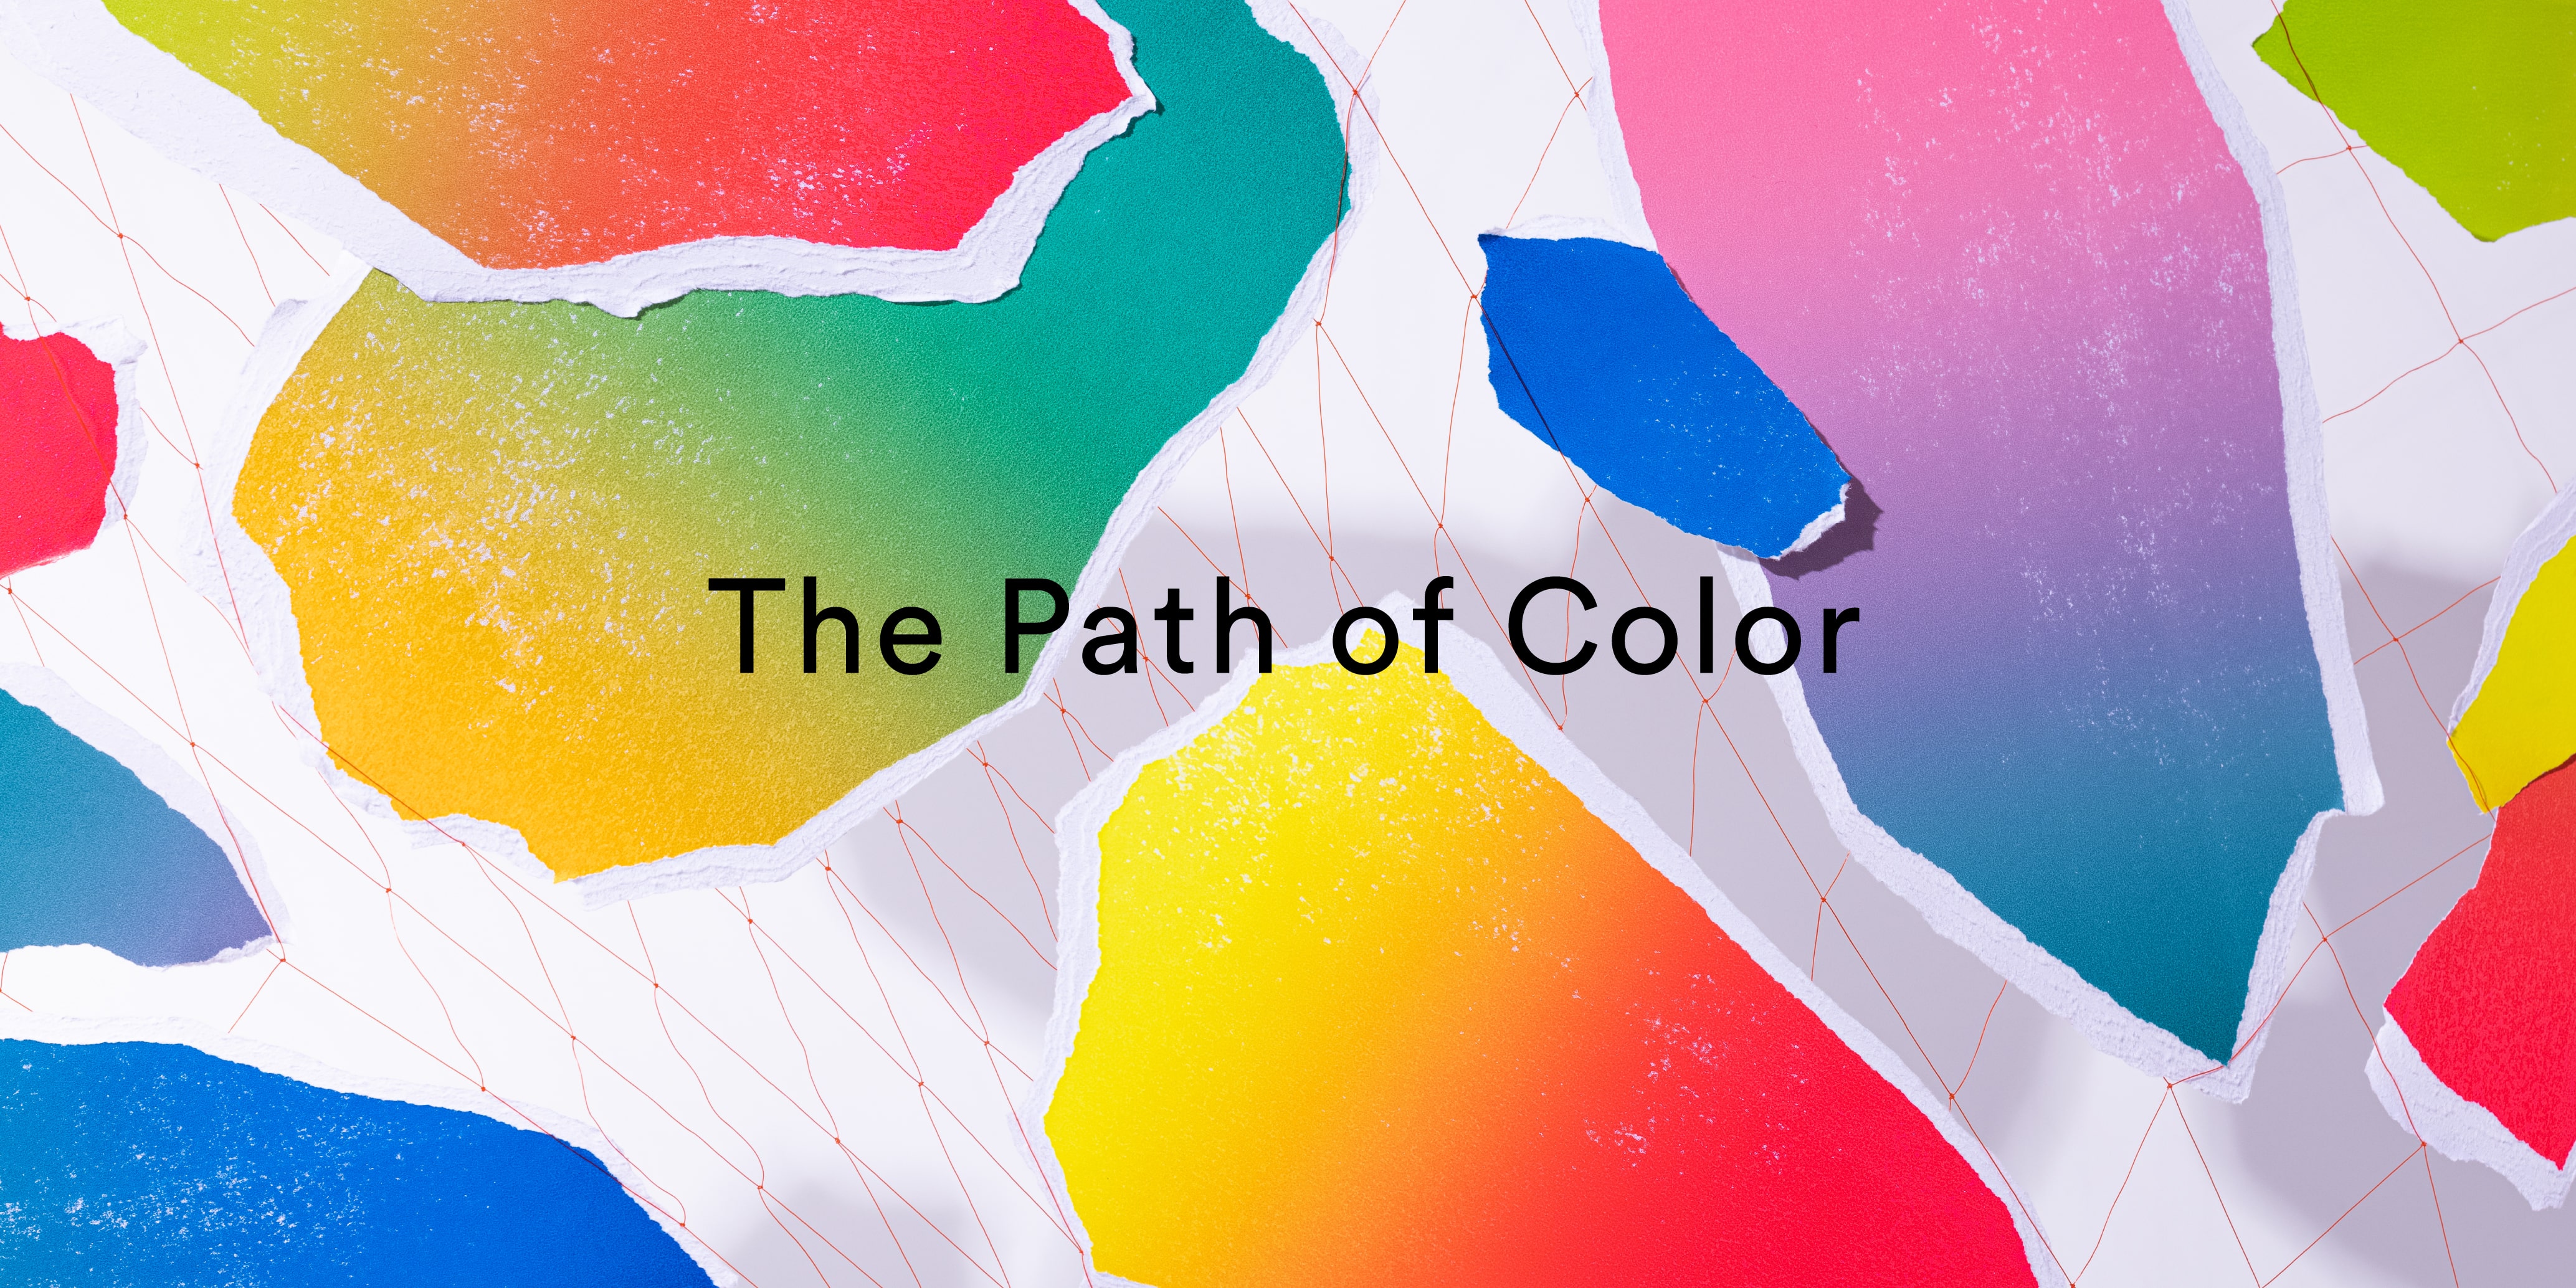 クリエイティブ・ユニット SPREADとコラボレーションした空間インスタレーション『The Path of Color』 (2)